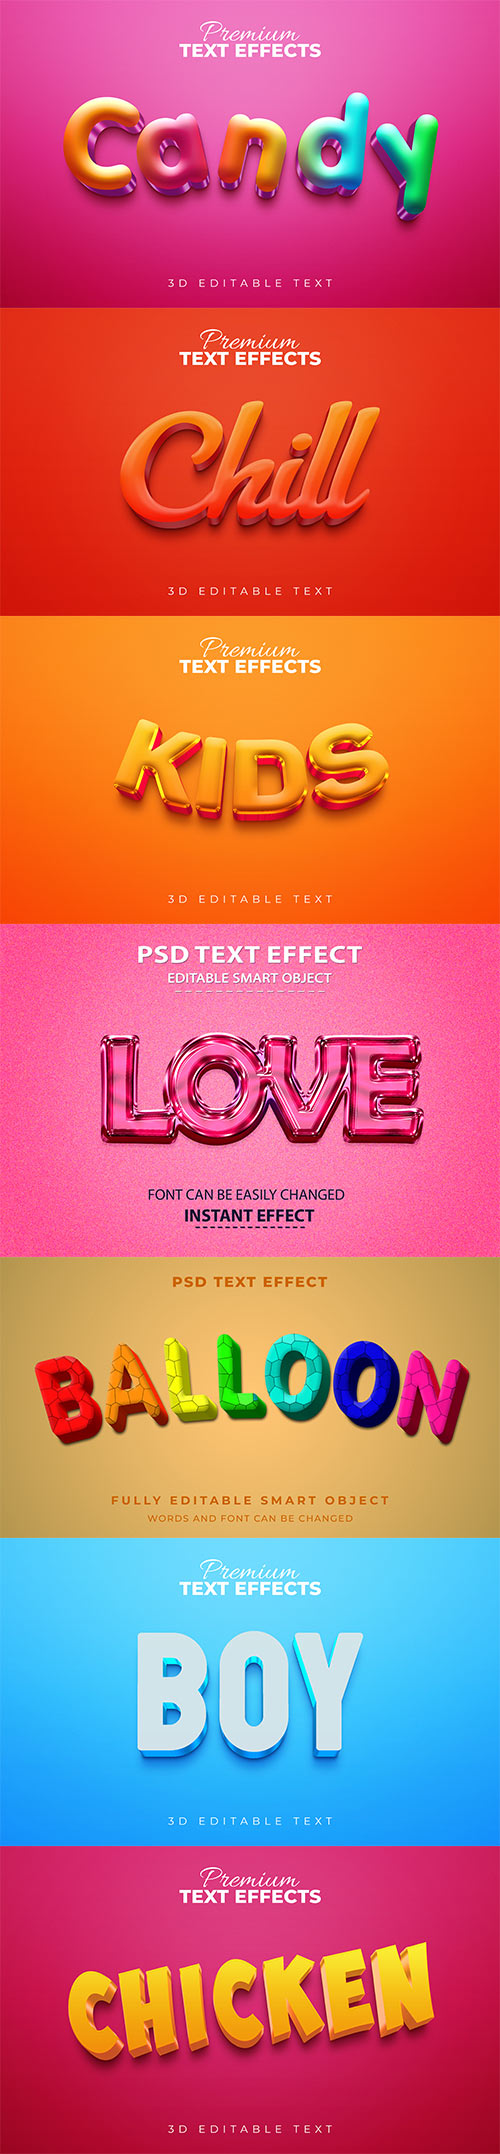 Psd text effect set vol 562